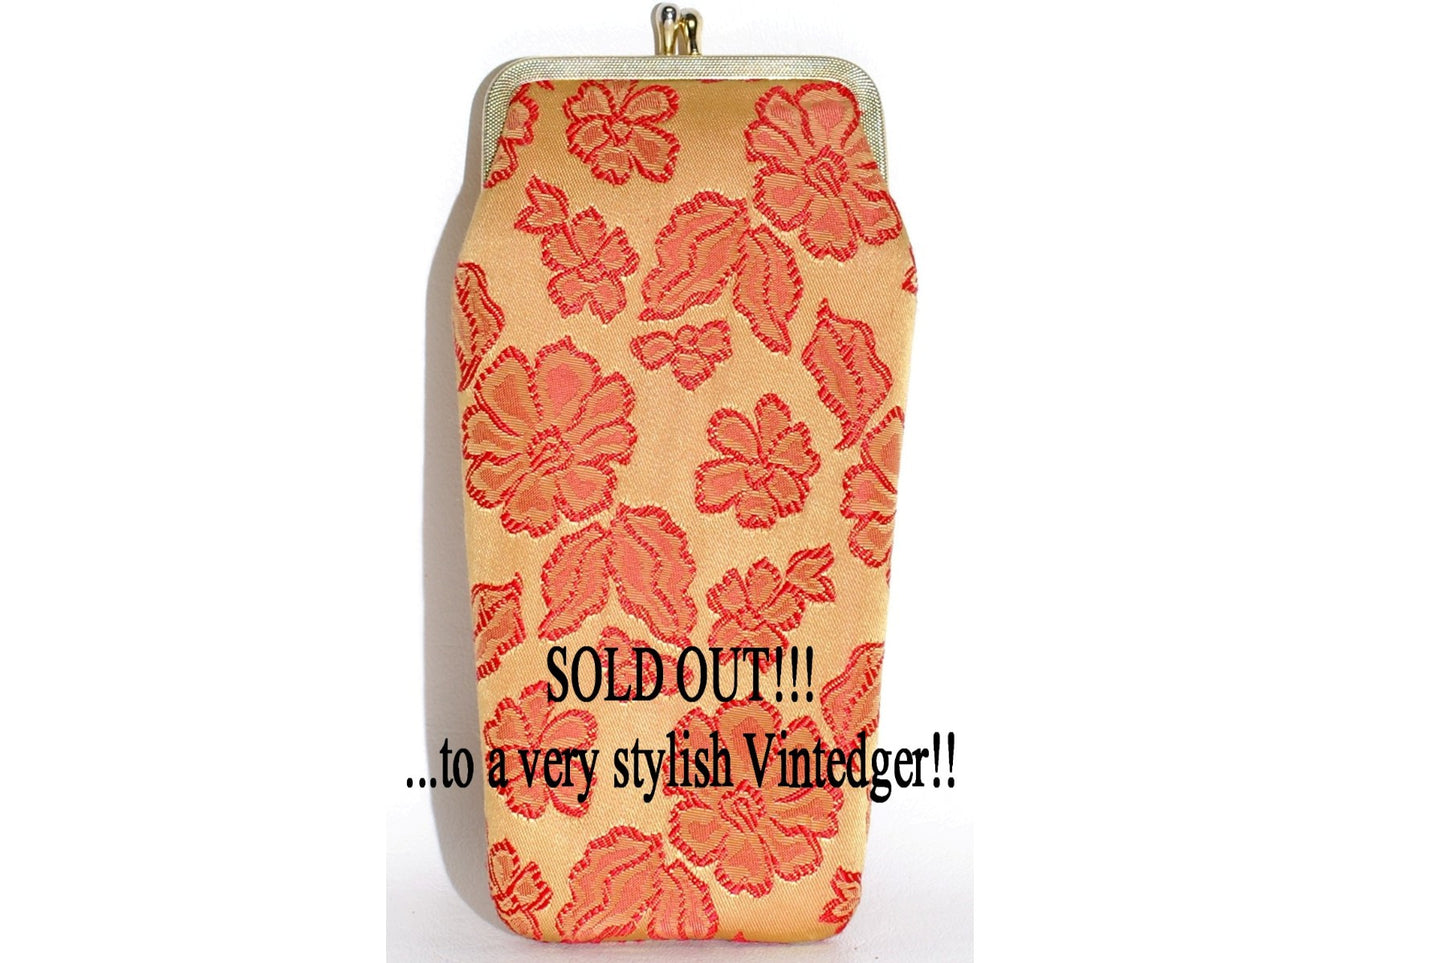 SOLD - Vintage Cigarette Holder The Vintedge Co.